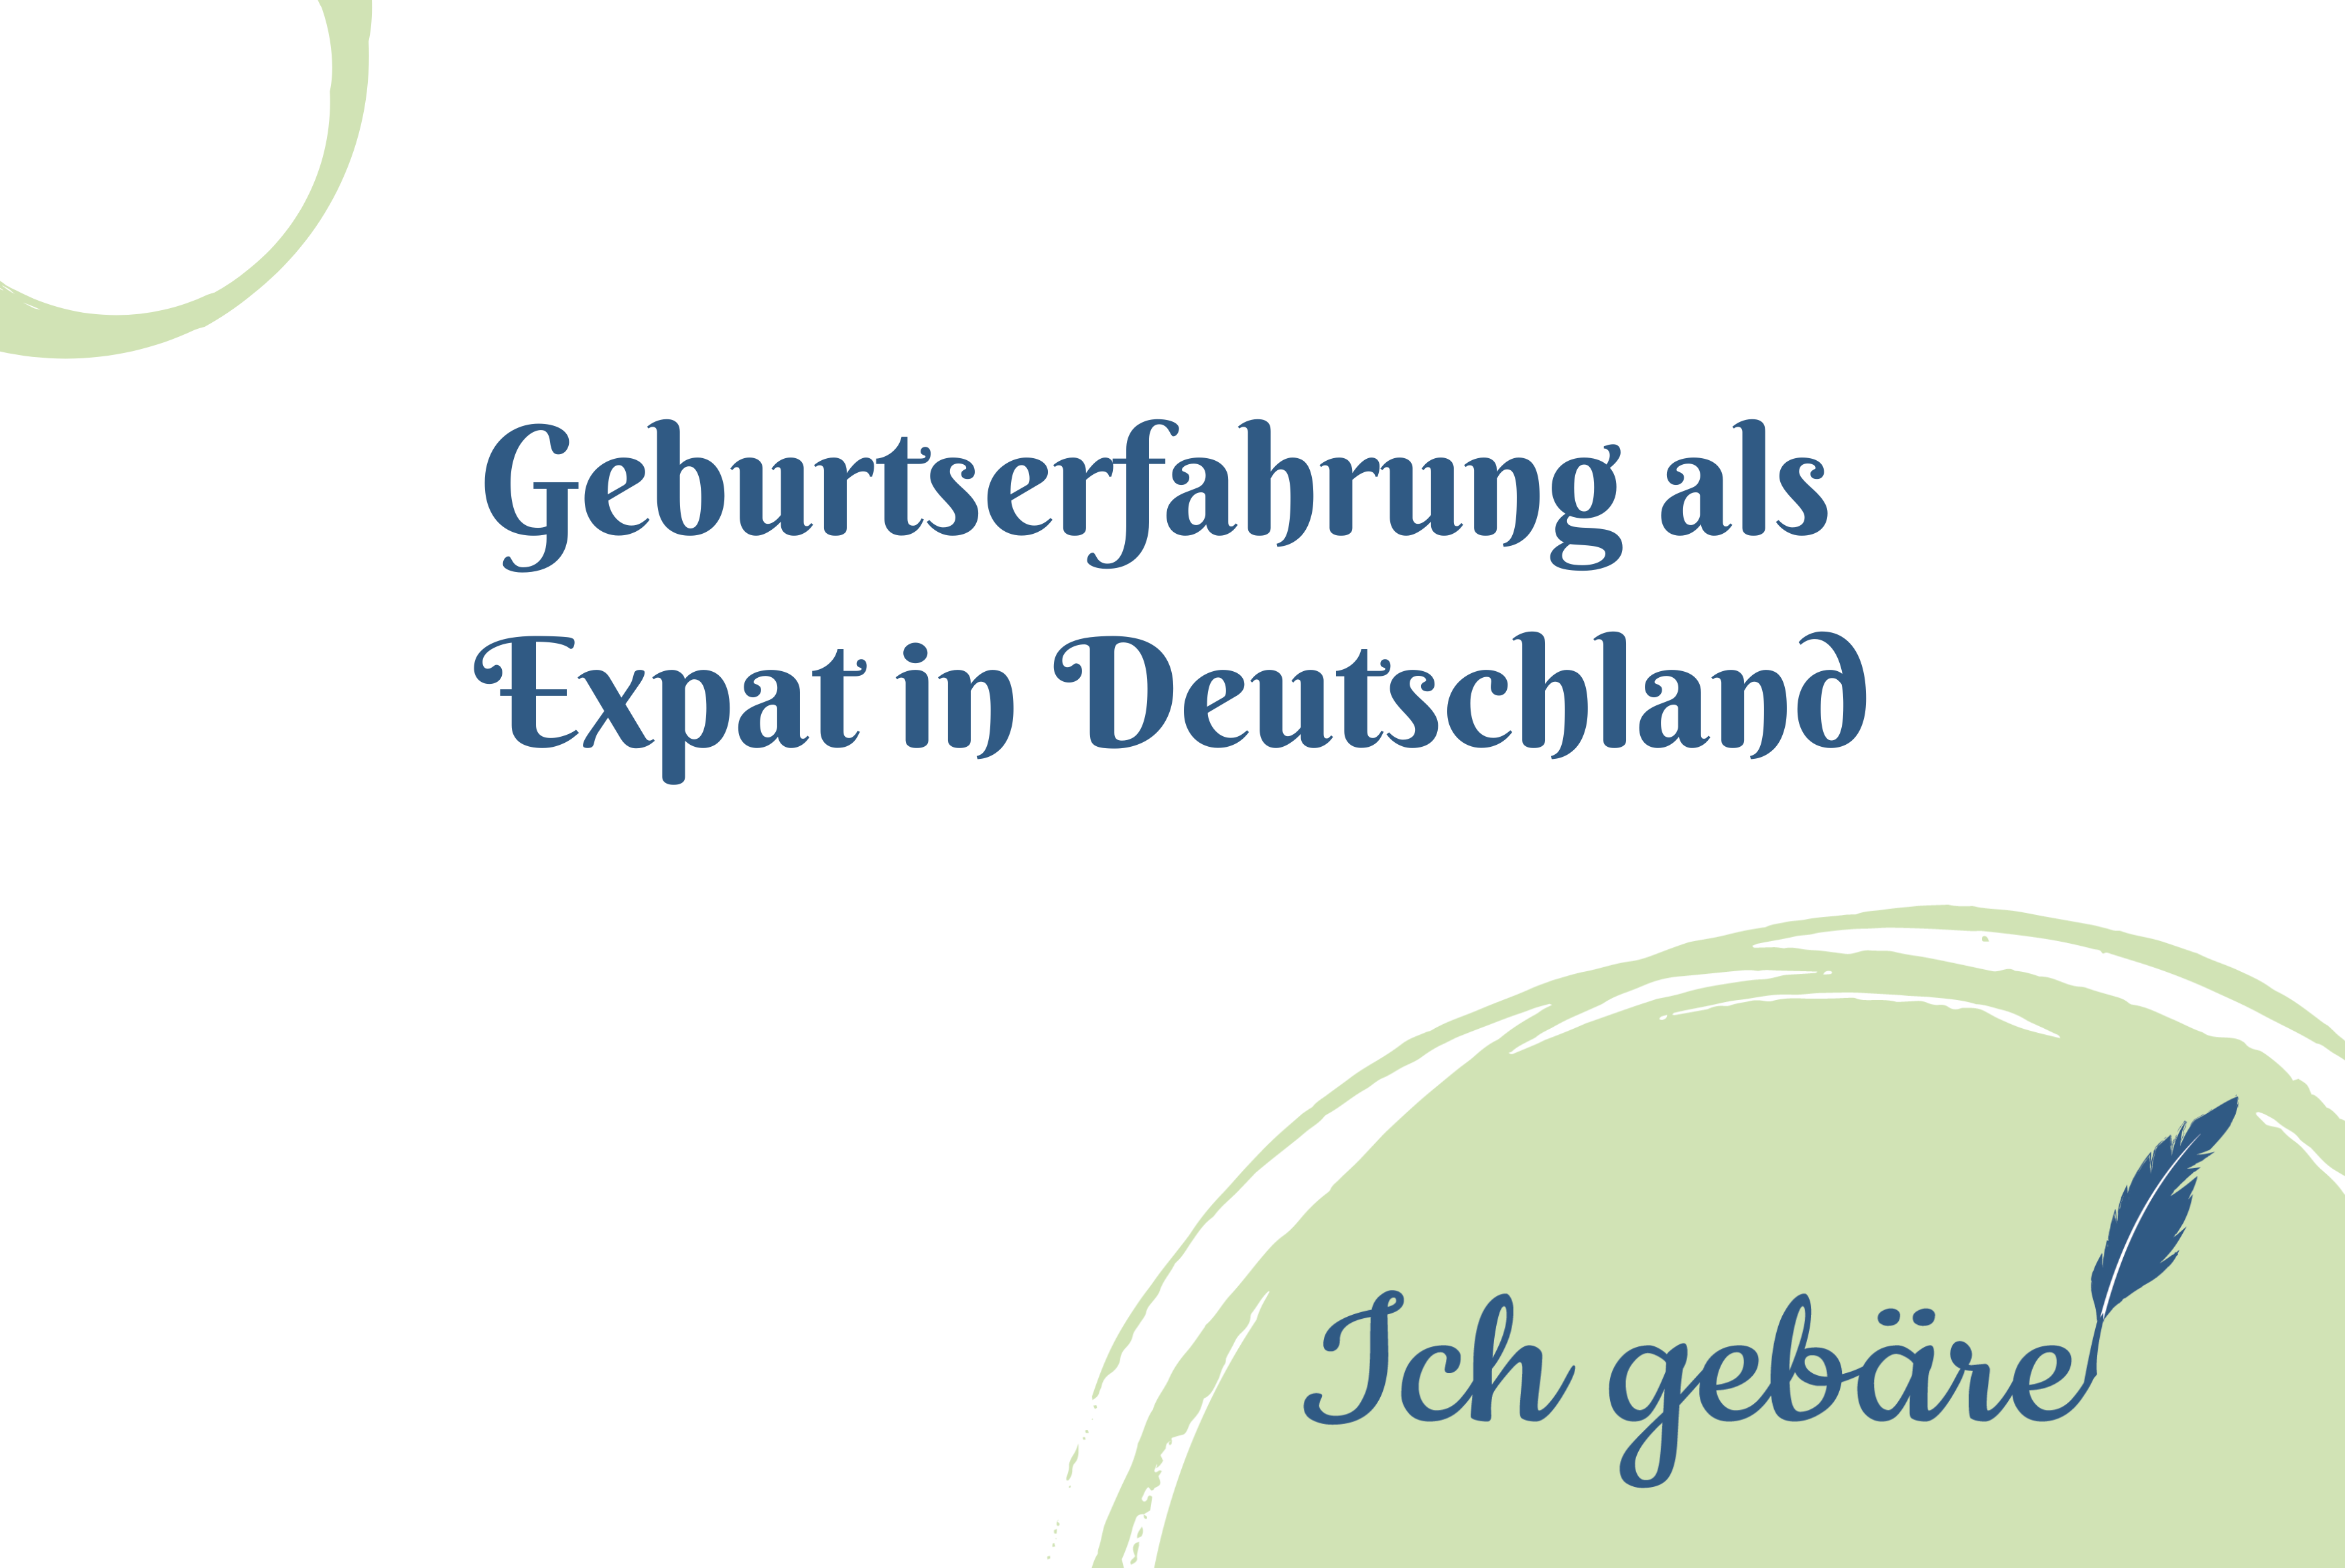 Titelbild: Gitte - Geburtserfahrung als Axpat in Deutschland